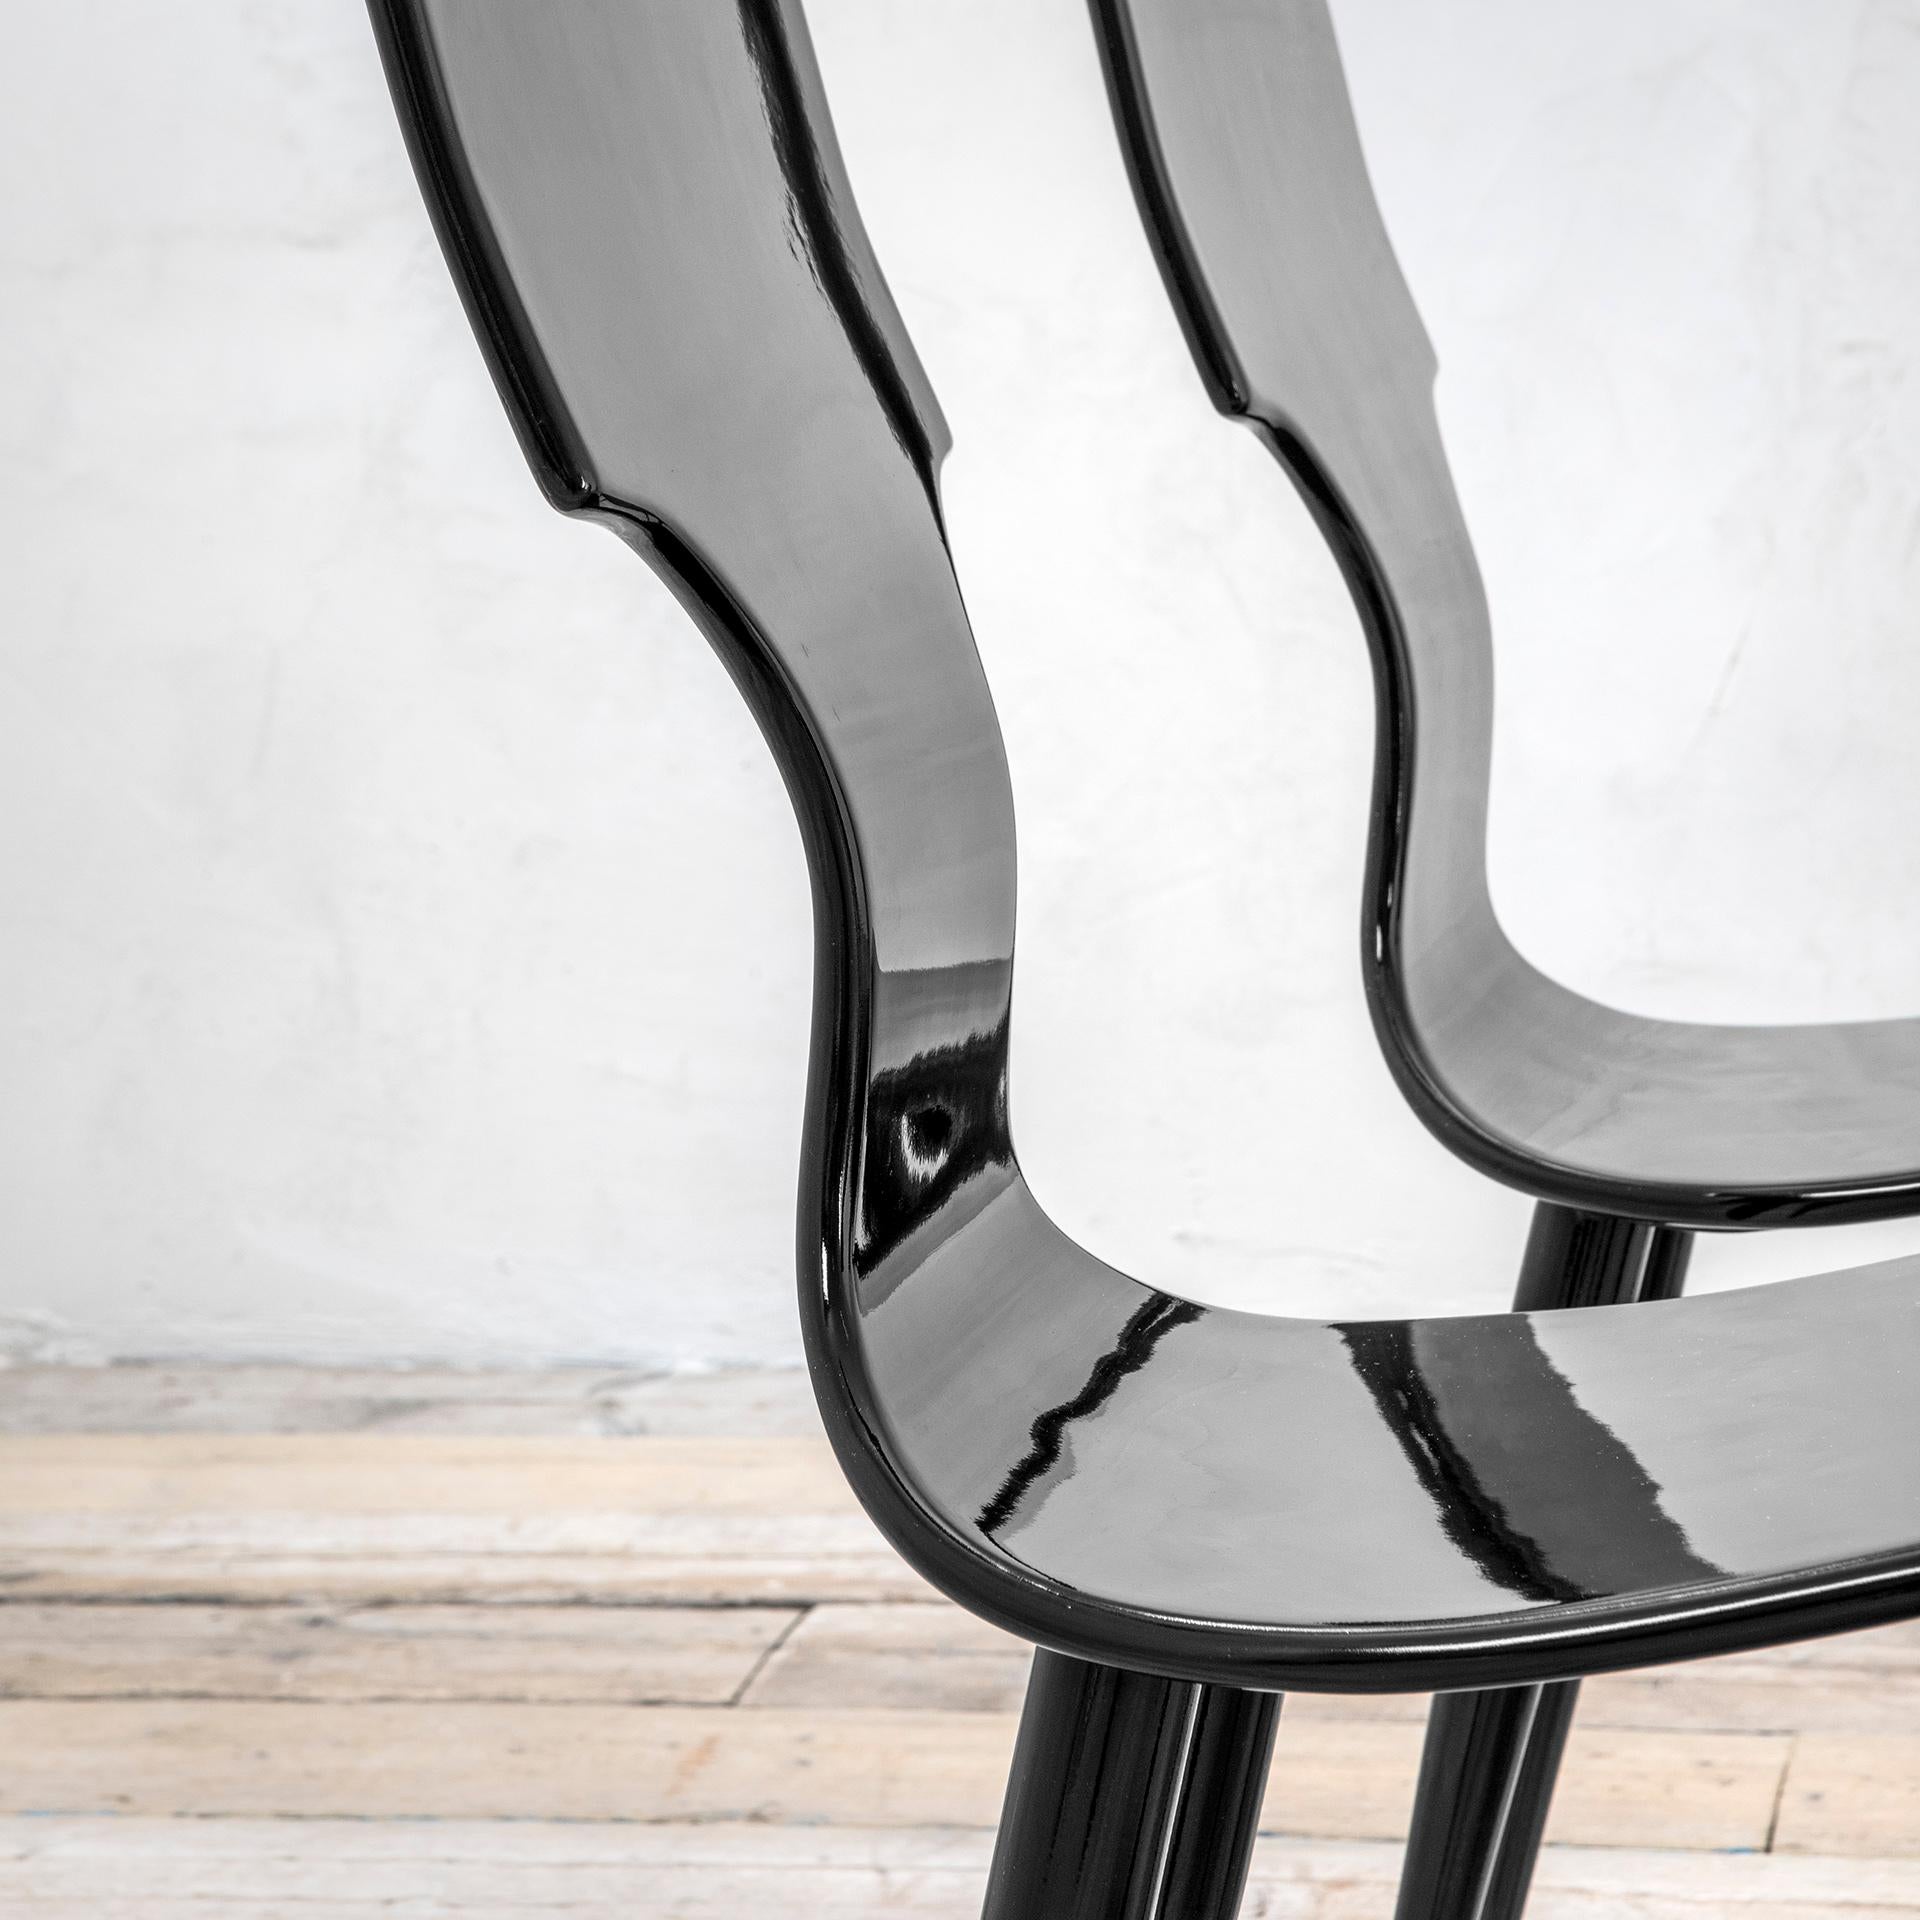 Satz von 4 Stühlen (insgesamt 4 Stück), entworfen von Atelier Fornasetti in den 50er Jahren und hergestellt in den 90er Jahren. Die Stühle haben eine Struktur ganz aus lackiertem Holz, die 4 Füße sind mit der Sitzfläche durch Metallplatten